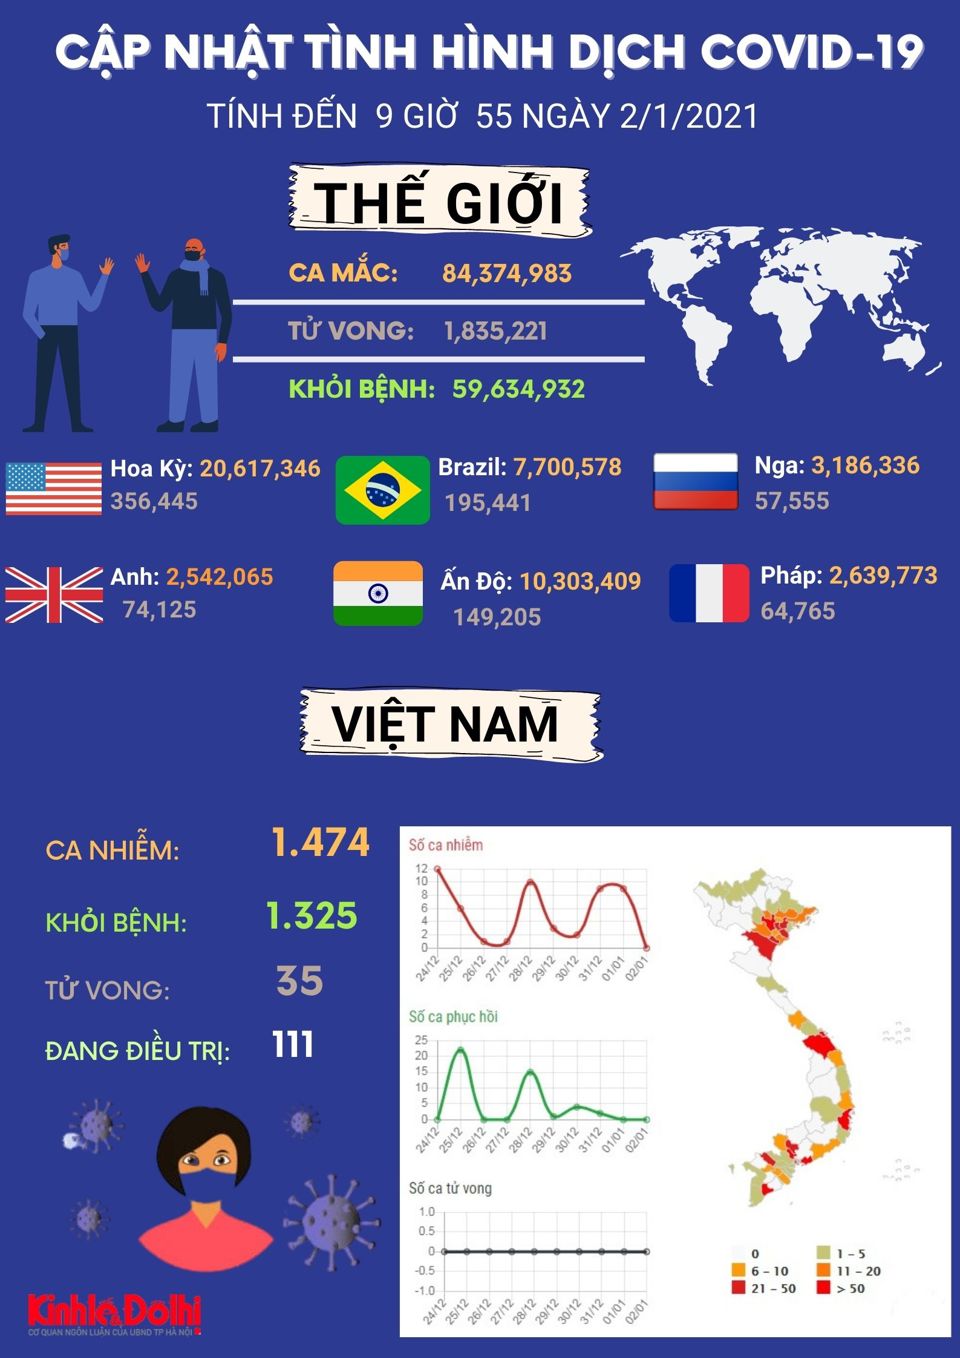 [Infographic] Thế giới vượt qua 84 triệu ca mắc Covid-19, Ấn Độ đứng thứ 2 sau Mỹ - Ảnh 1